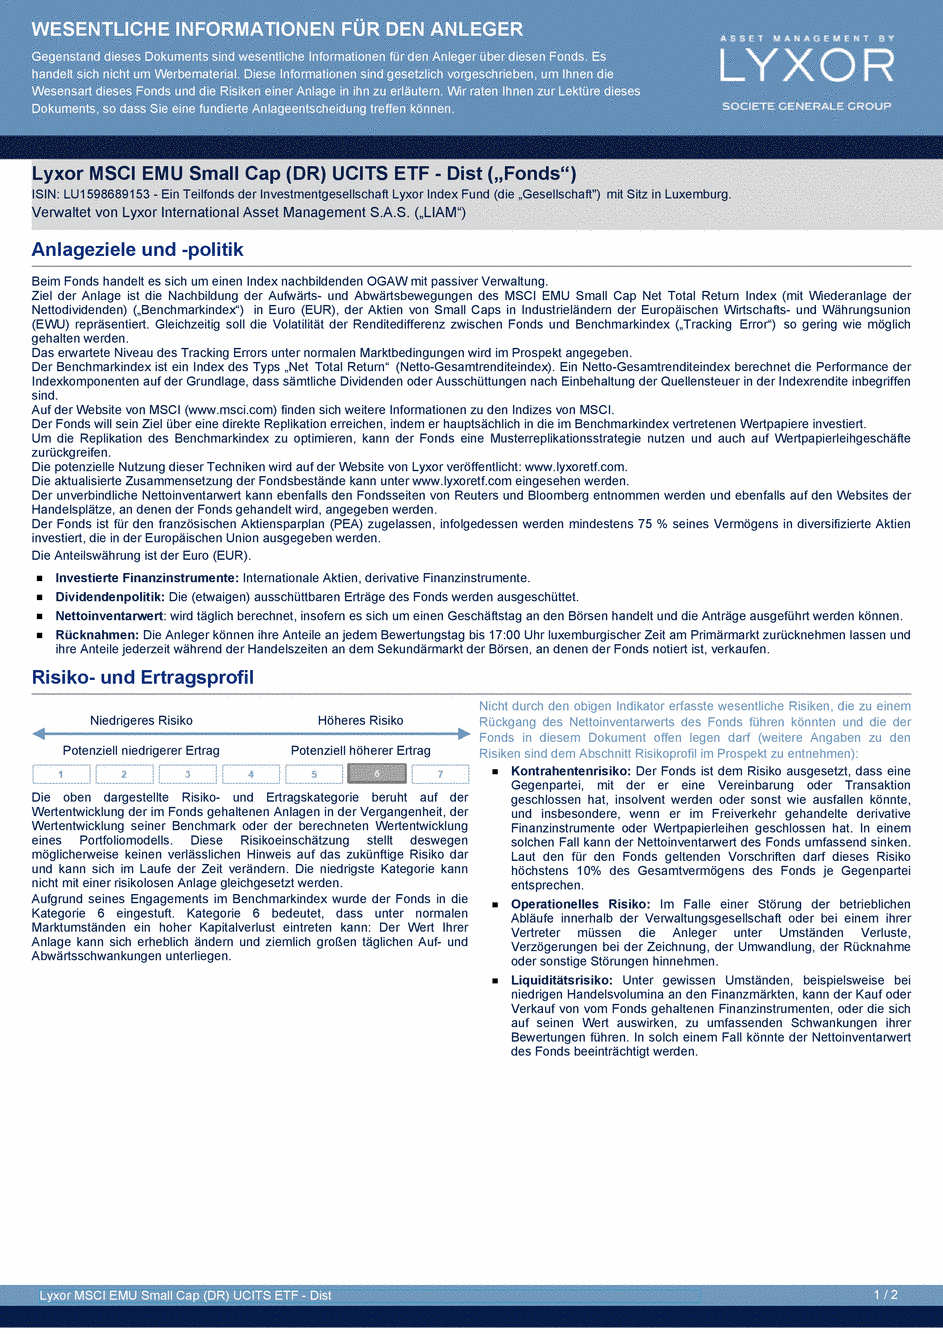 DICI Lyxor MSCI EMU Small Cap (DR) UCITS ETF - Dist - 19/02/2021 - Allemand